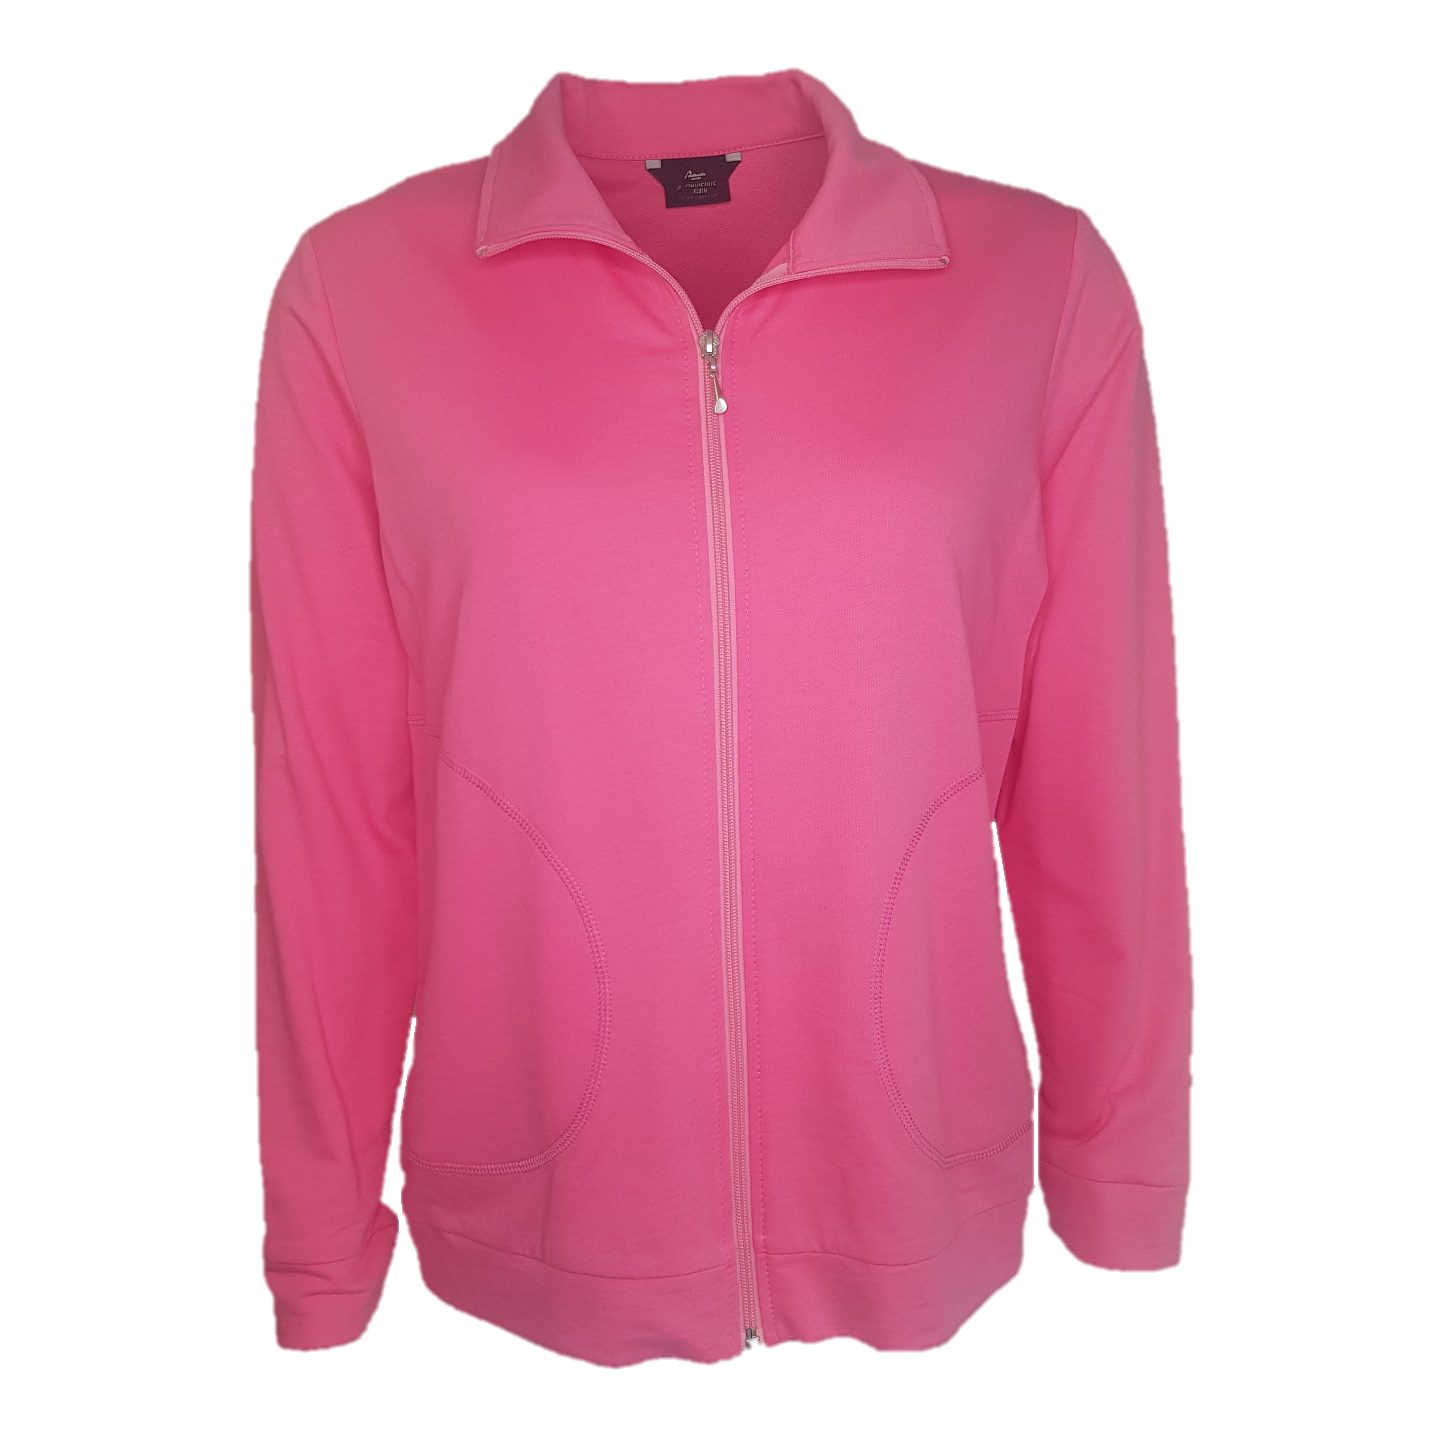 Authentic Baumwolle aus Sport- und Sweatjacke Pink 100% Damen Klein Freizeitjacke